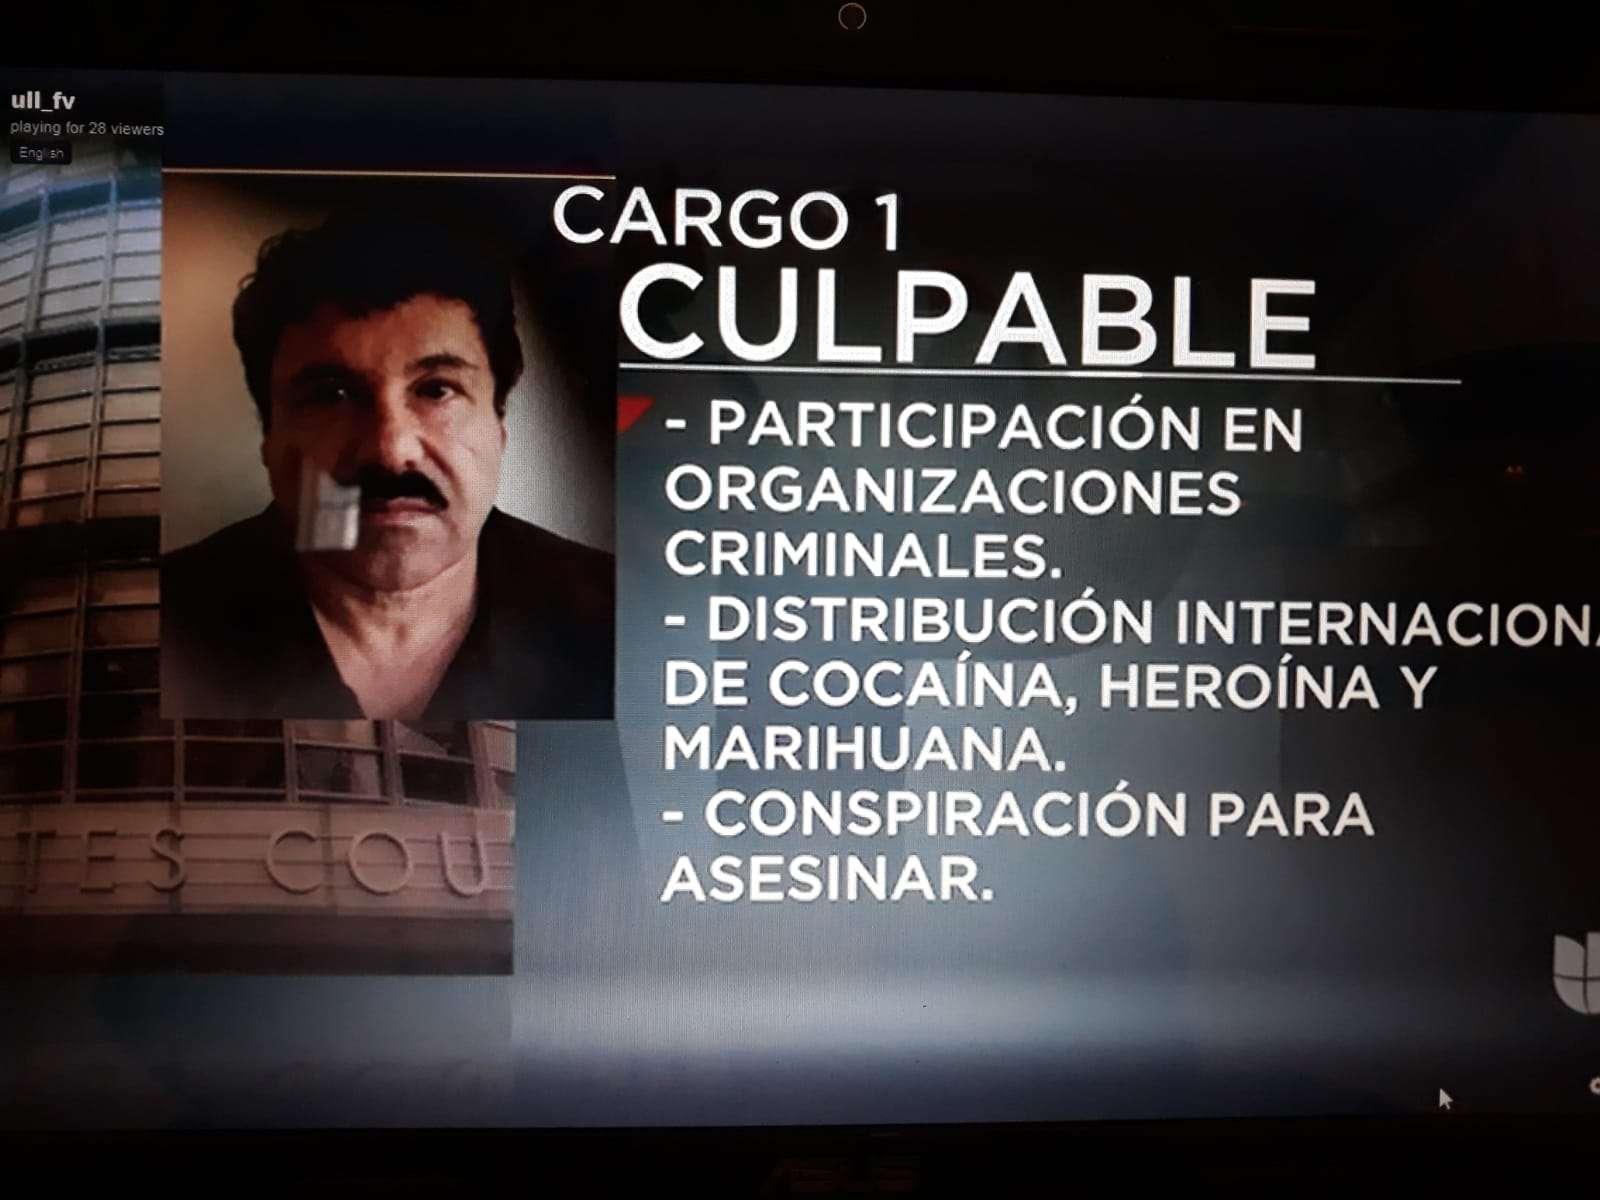 Así informan sobre la audiencia de El Chapo, las cadenas internacionales